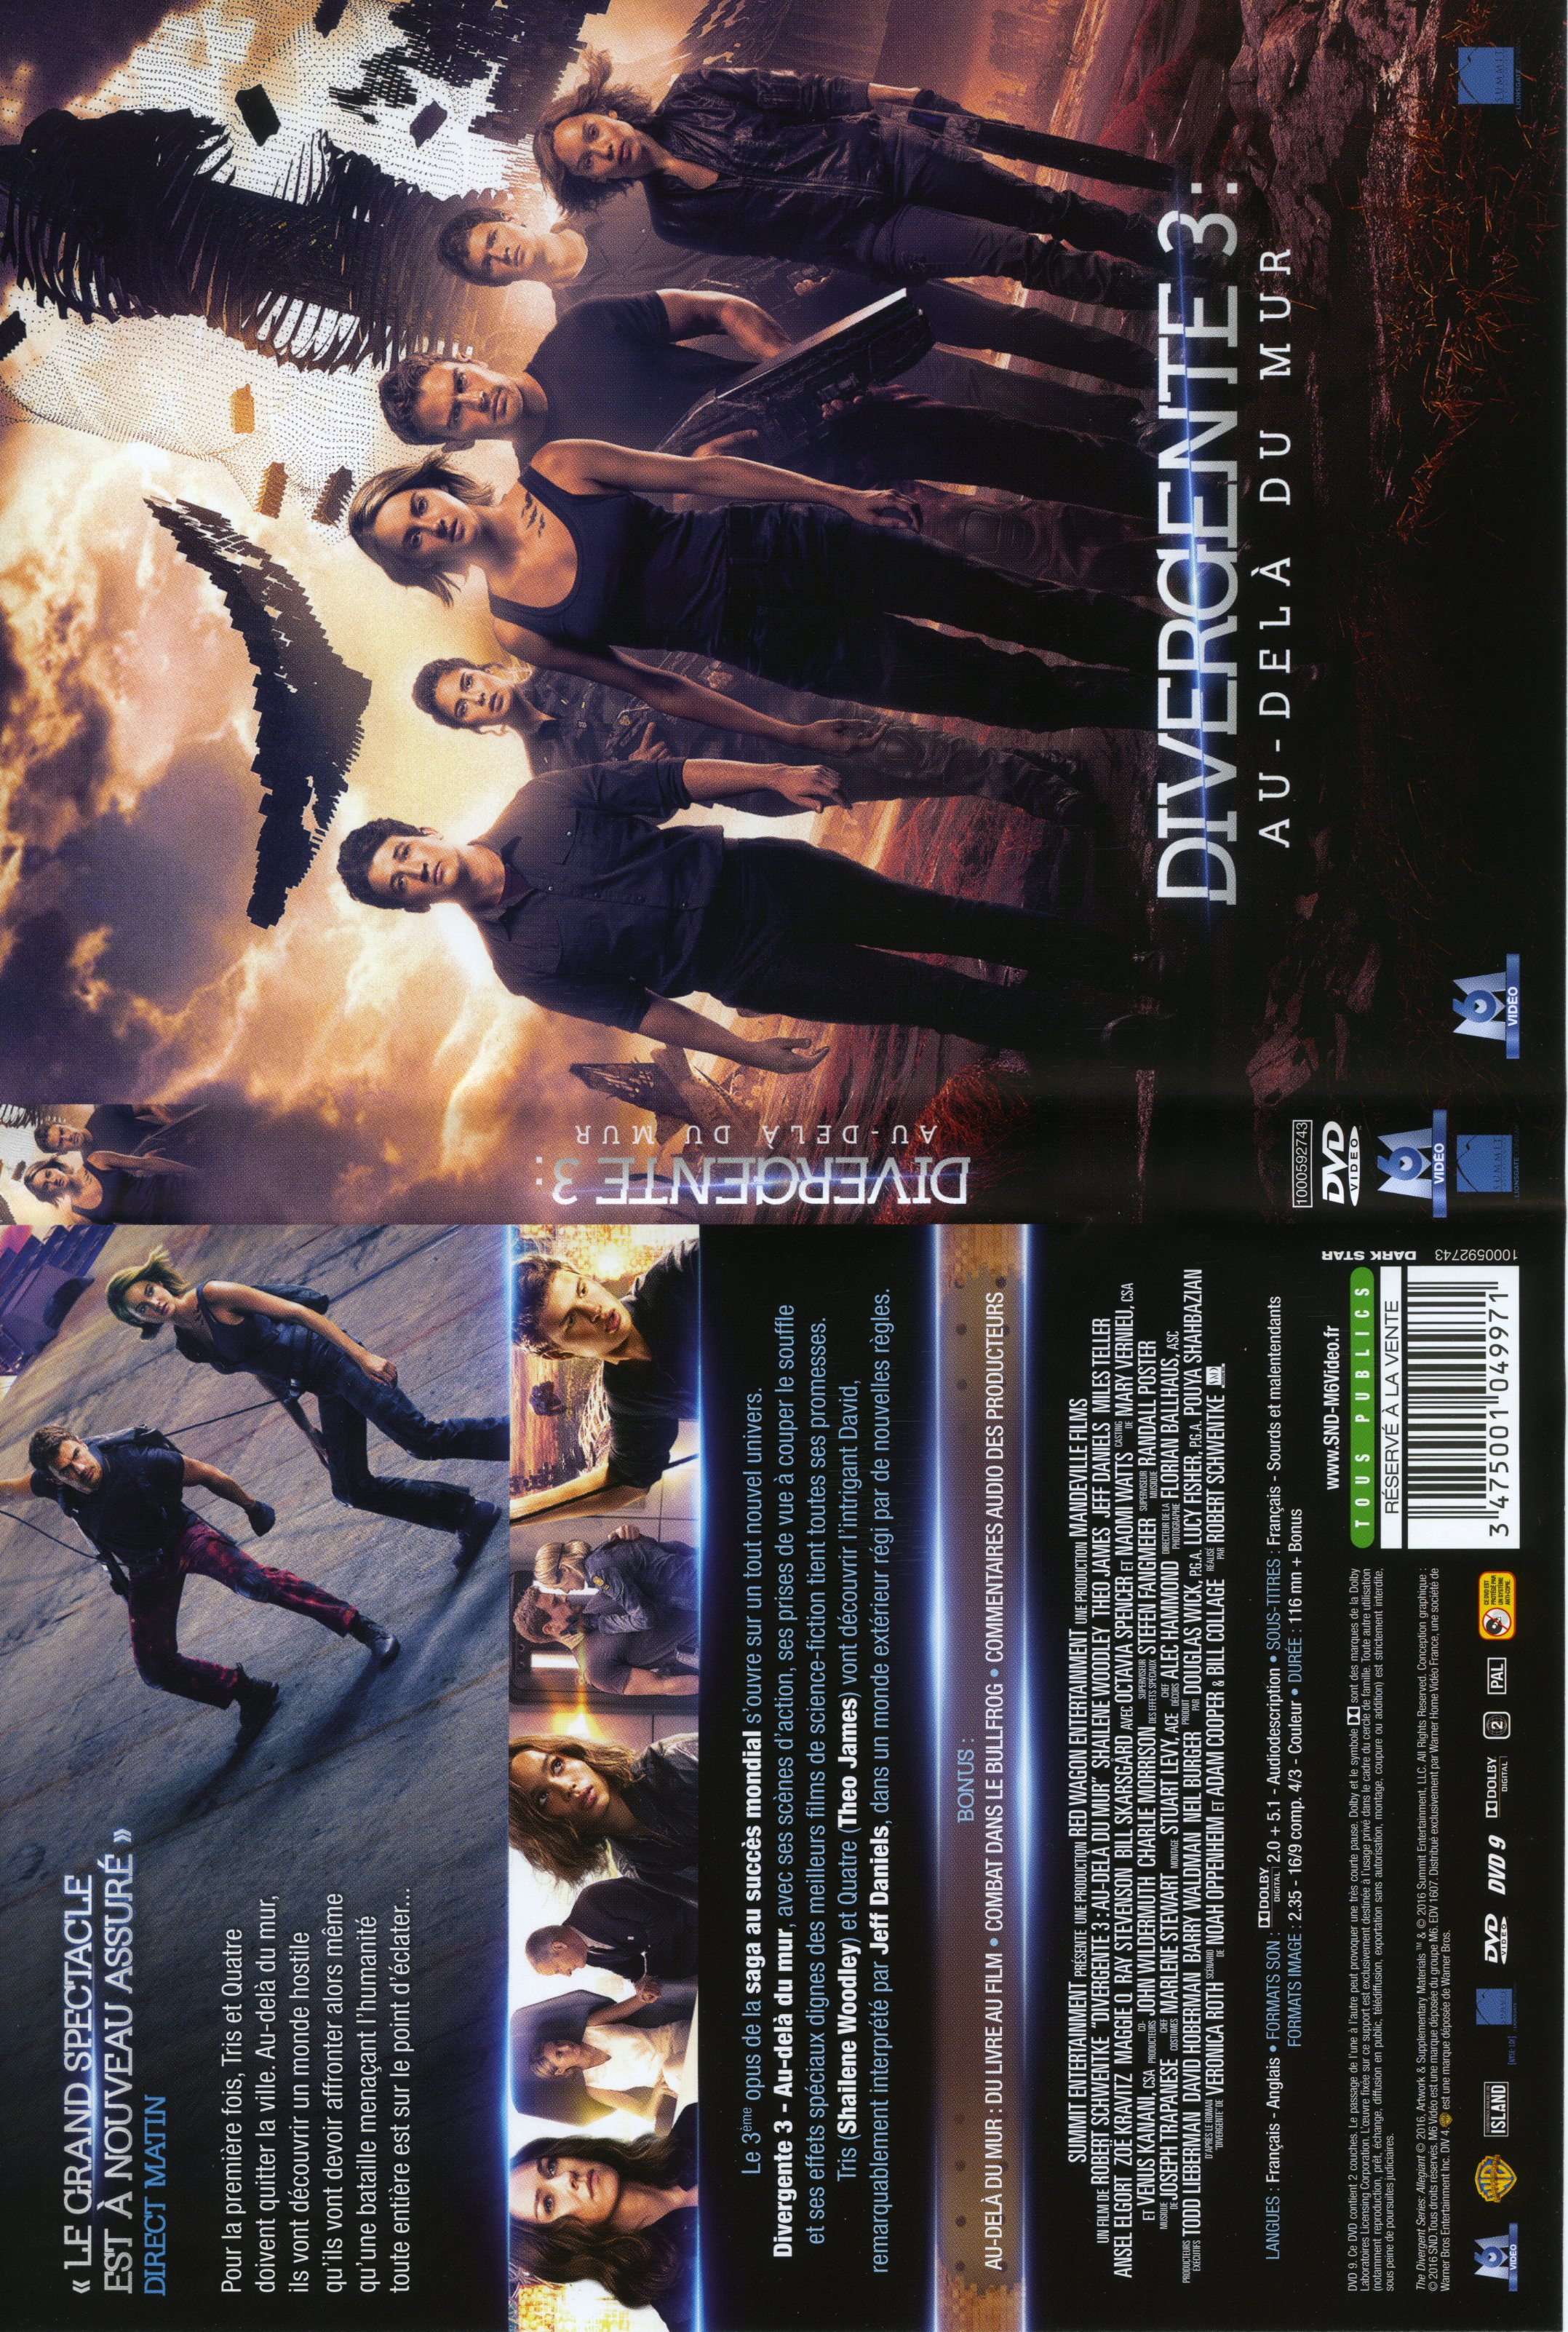 Jaquette DVD Divergente 3